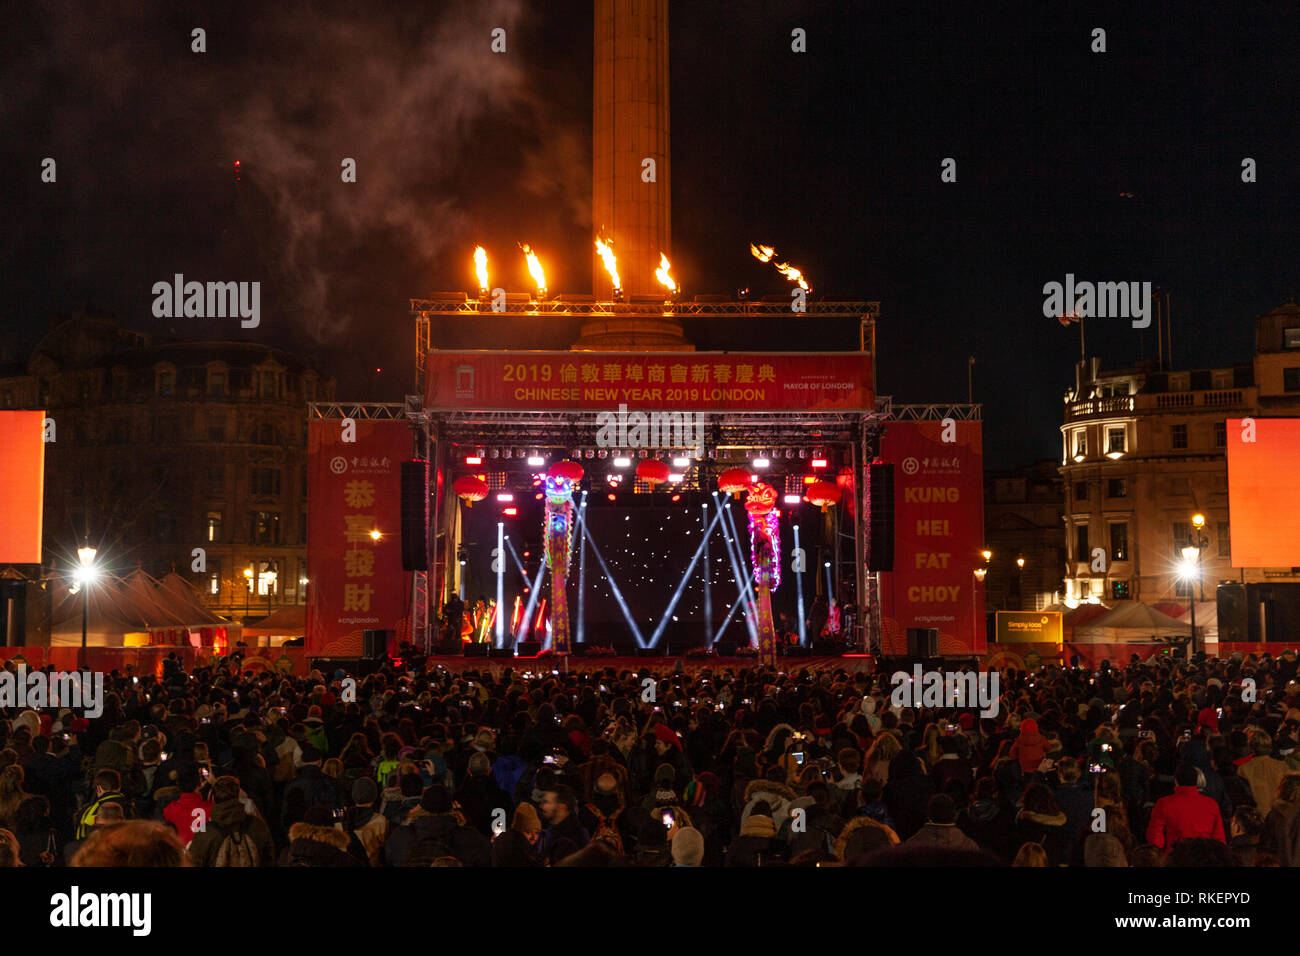 Londres, Royaume-Uni, 10 février 2019. Célébration du Nouvel an chinois à Trafalgar Squaren London, UK. Alamy/Harishkumar Shah Banque D'Images